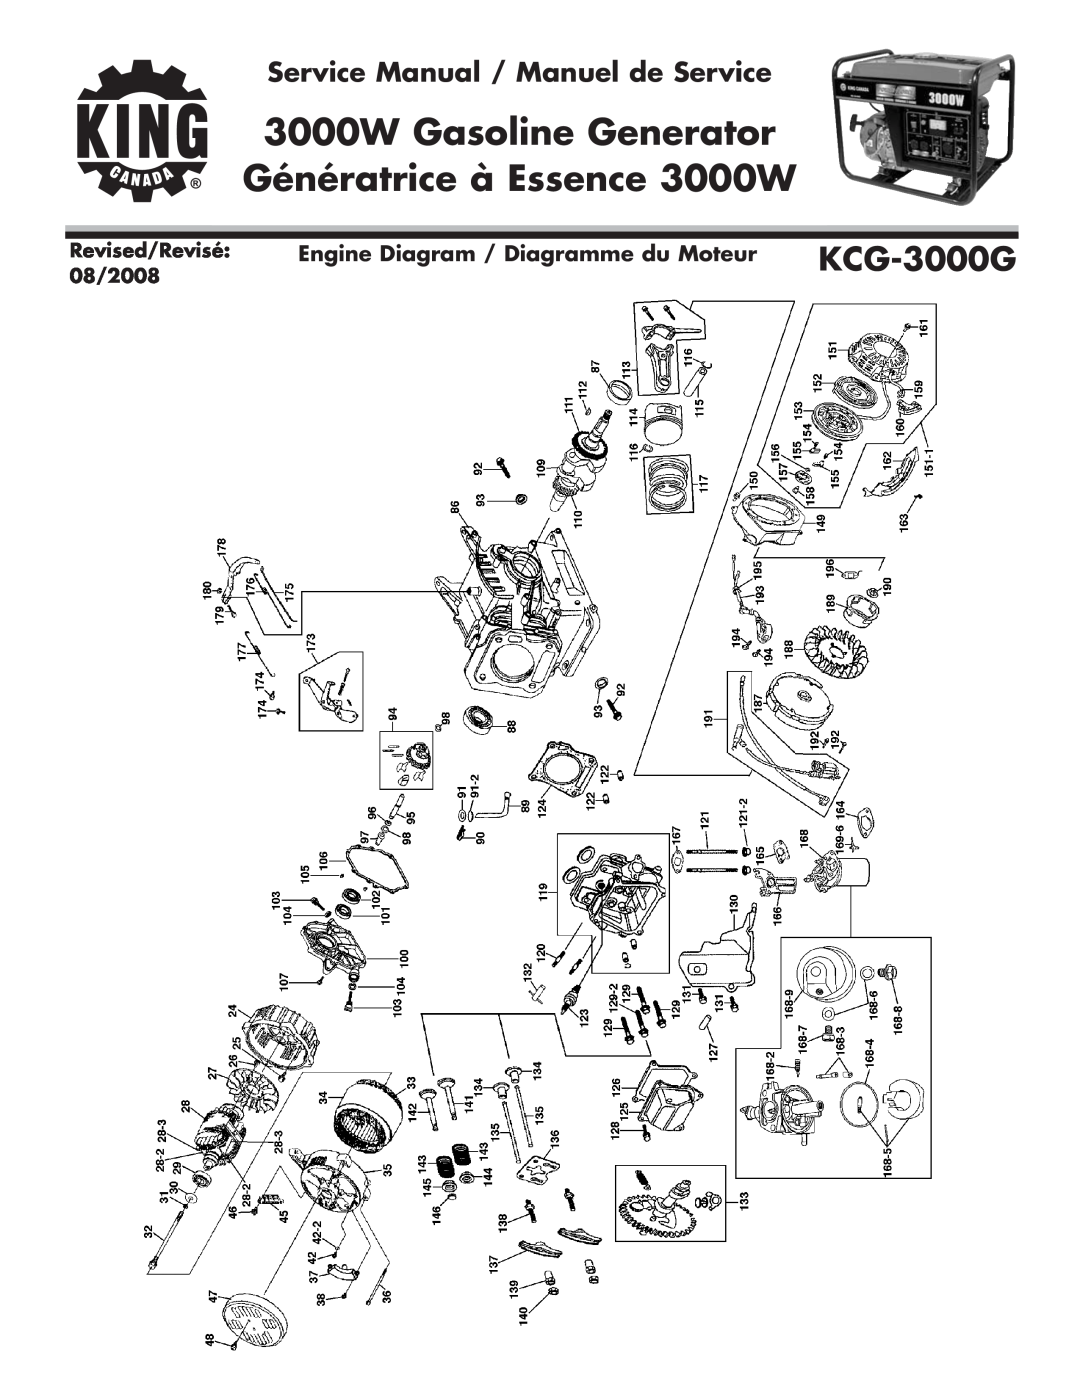 King Canada KCG-3000G service manual 3000W Gasoline Generator, Génératrice à Essence 3000W, Revised/Revisé, 08/2008 